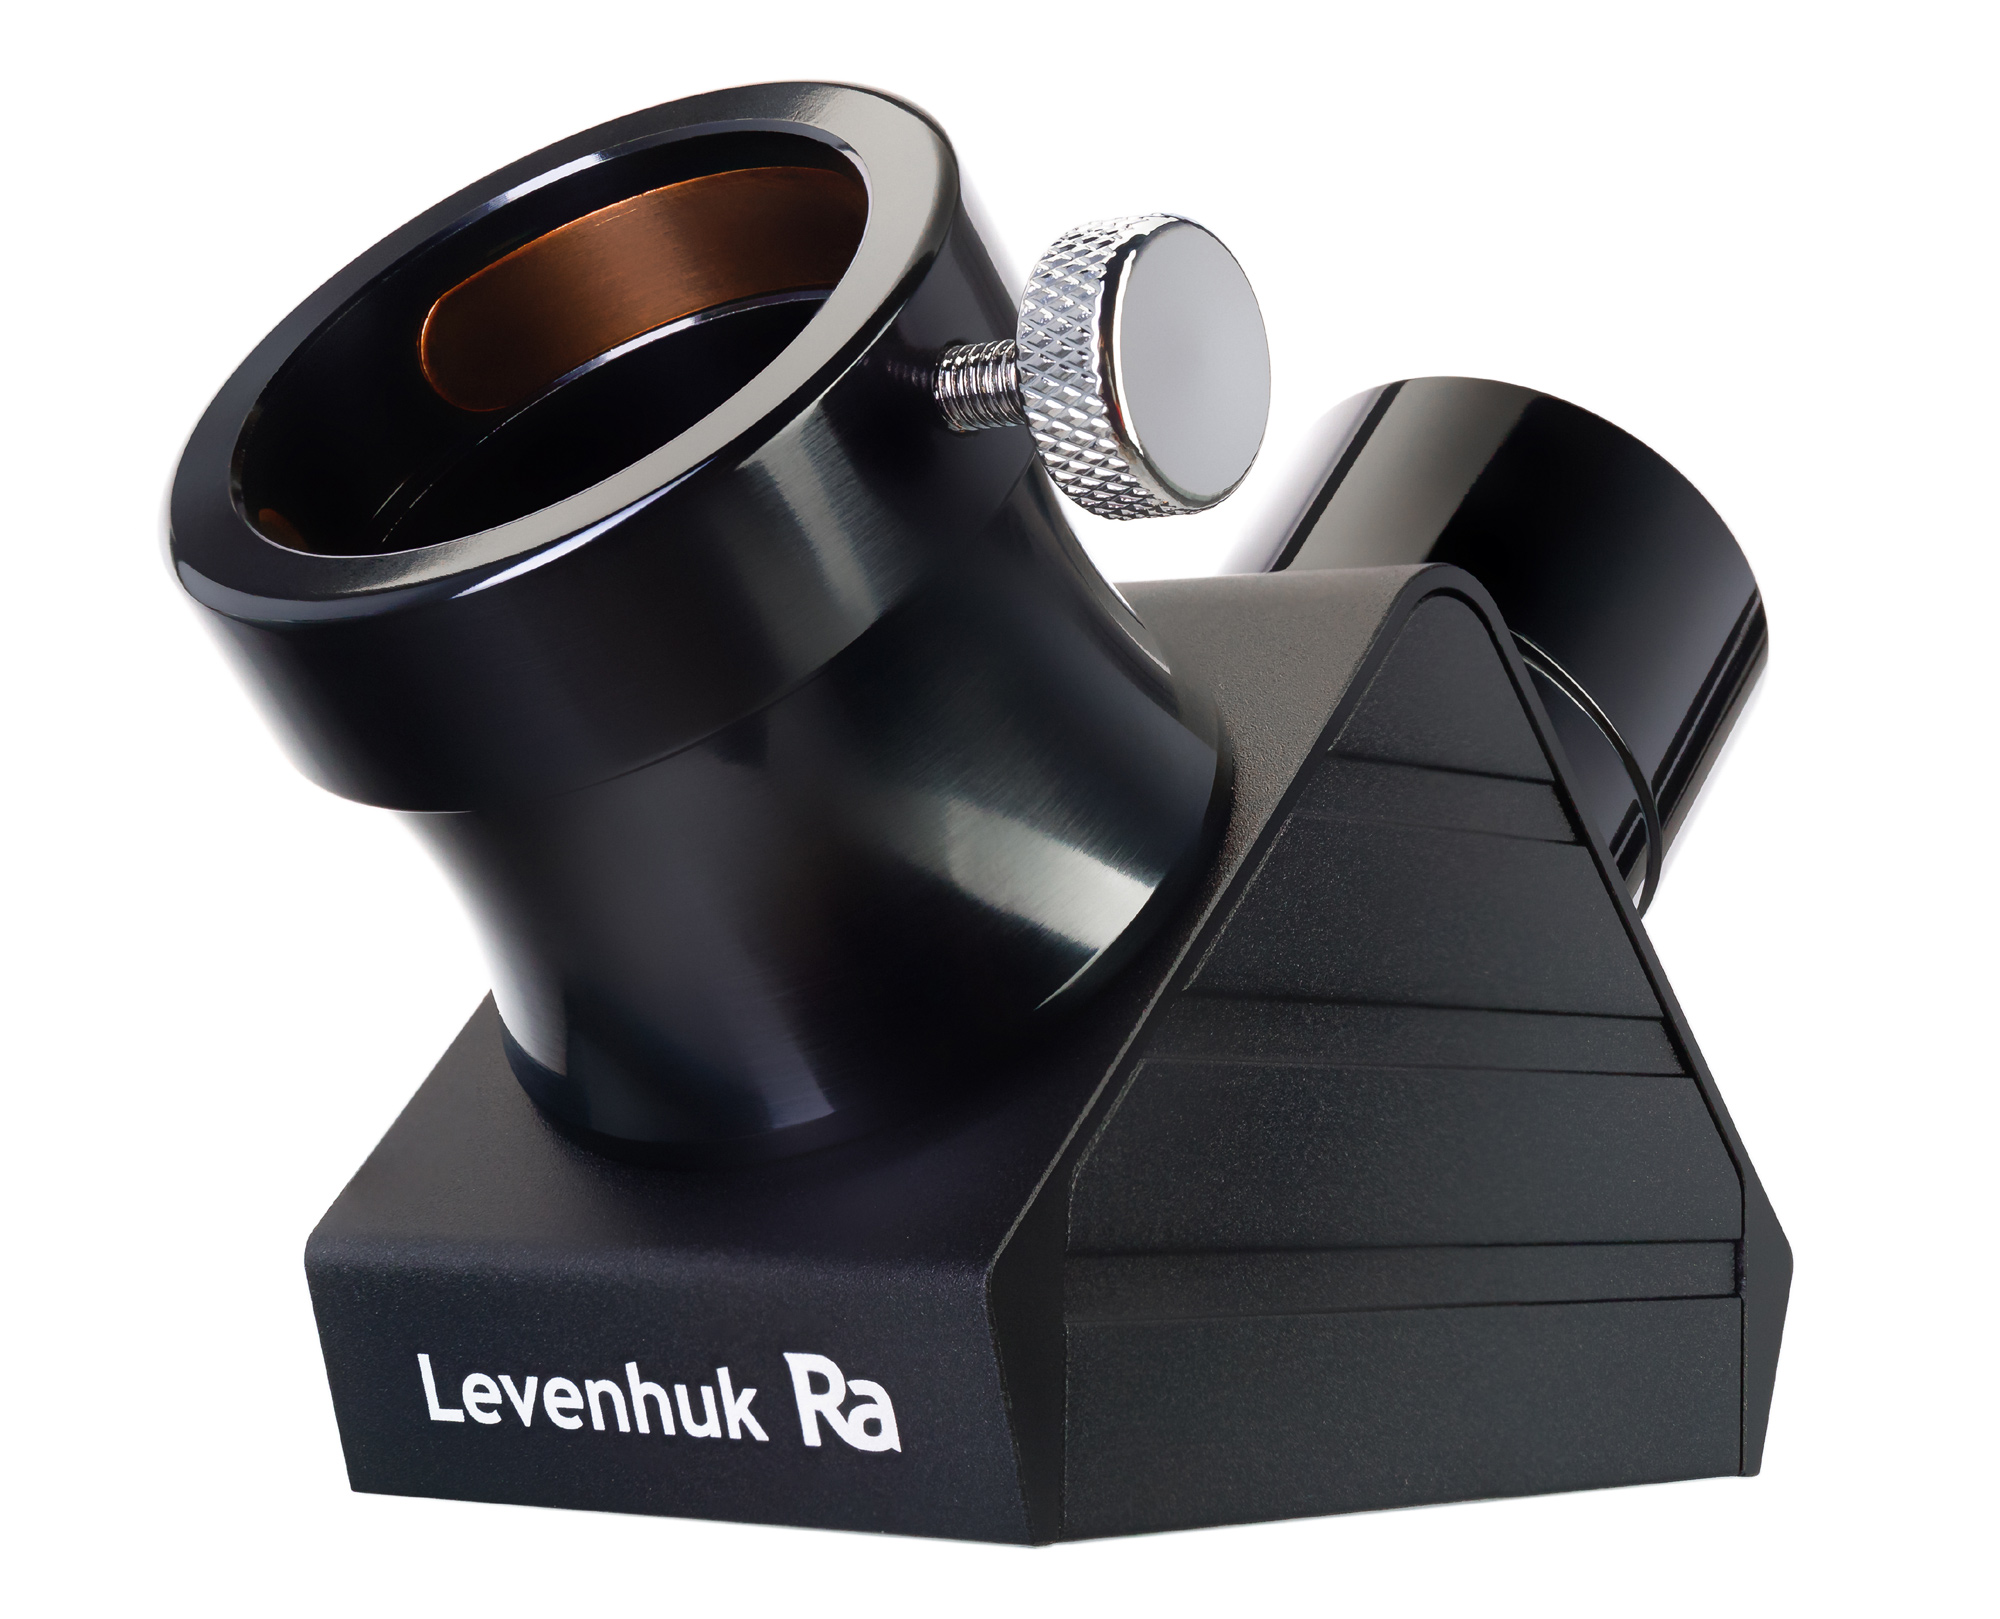 Levenhuk Ra R66 ED Doublet Carbon Kit v2 купить по оптимальной цене,  доставка по России, гарантия качества